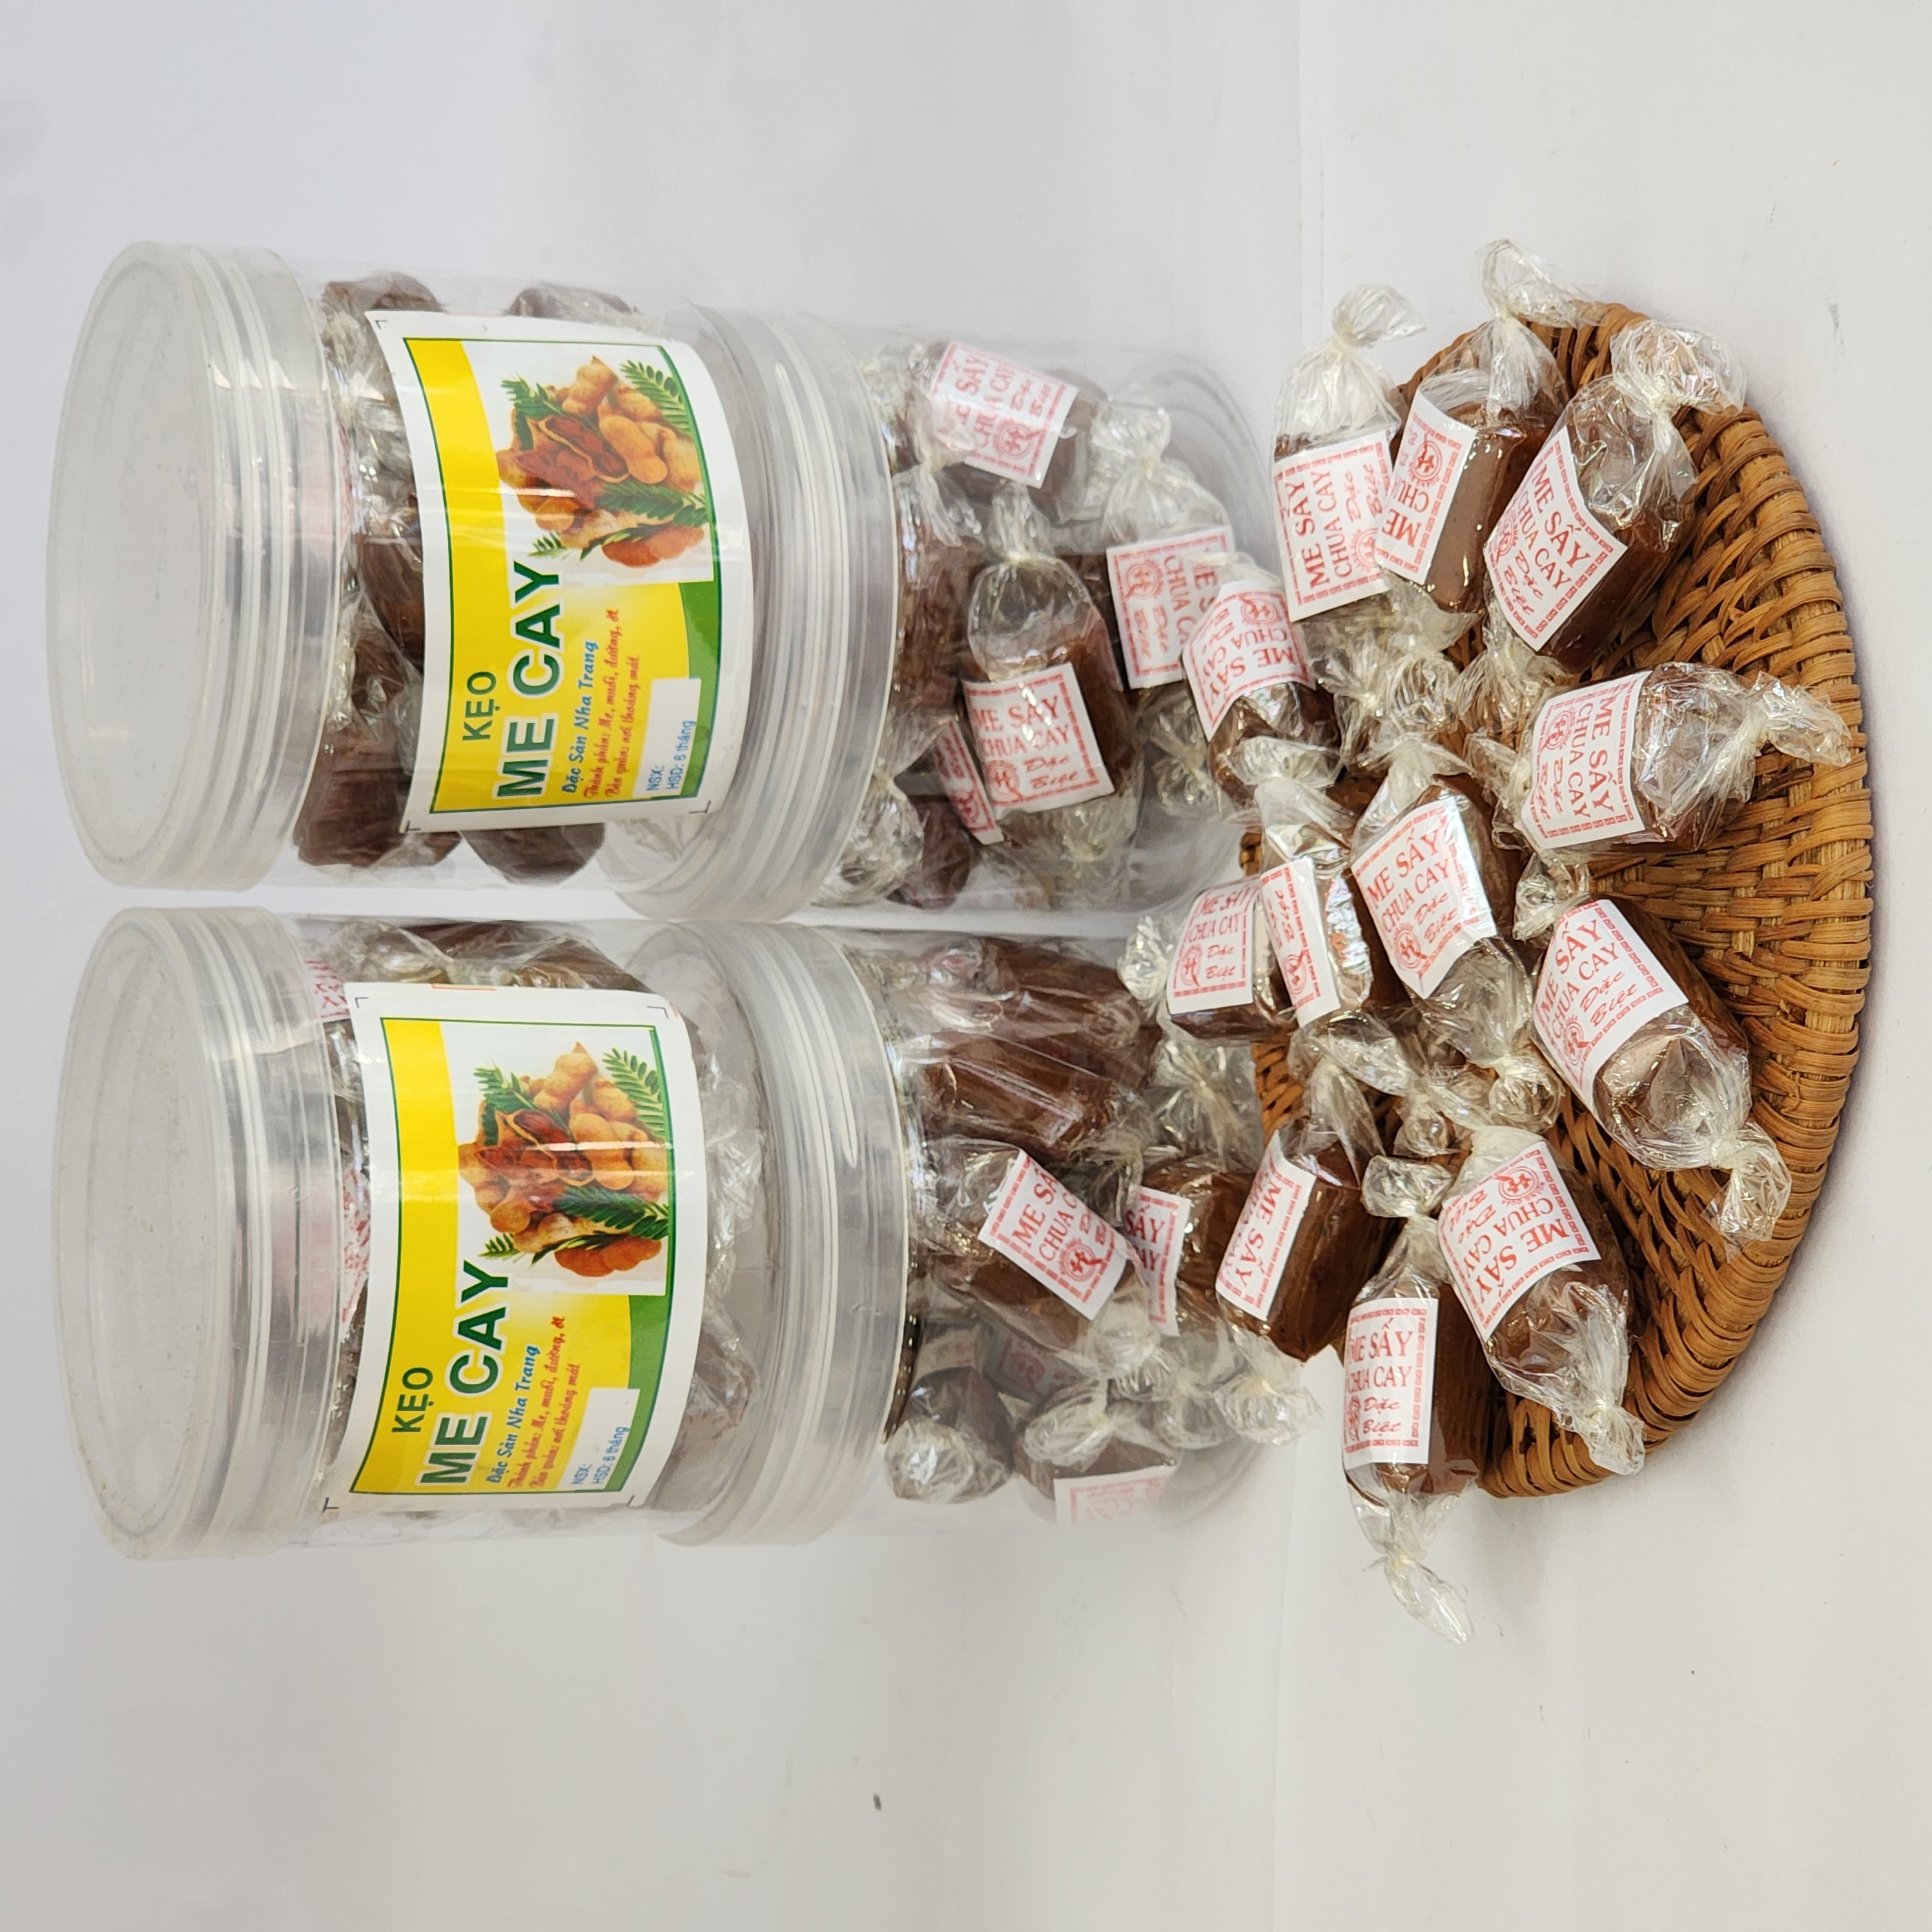 Đặc Sản Nha Trang -️ Kẹo Me Cay Sấy Khô, Chua Chua Cay Cay, Seavy Hộp 200 gram